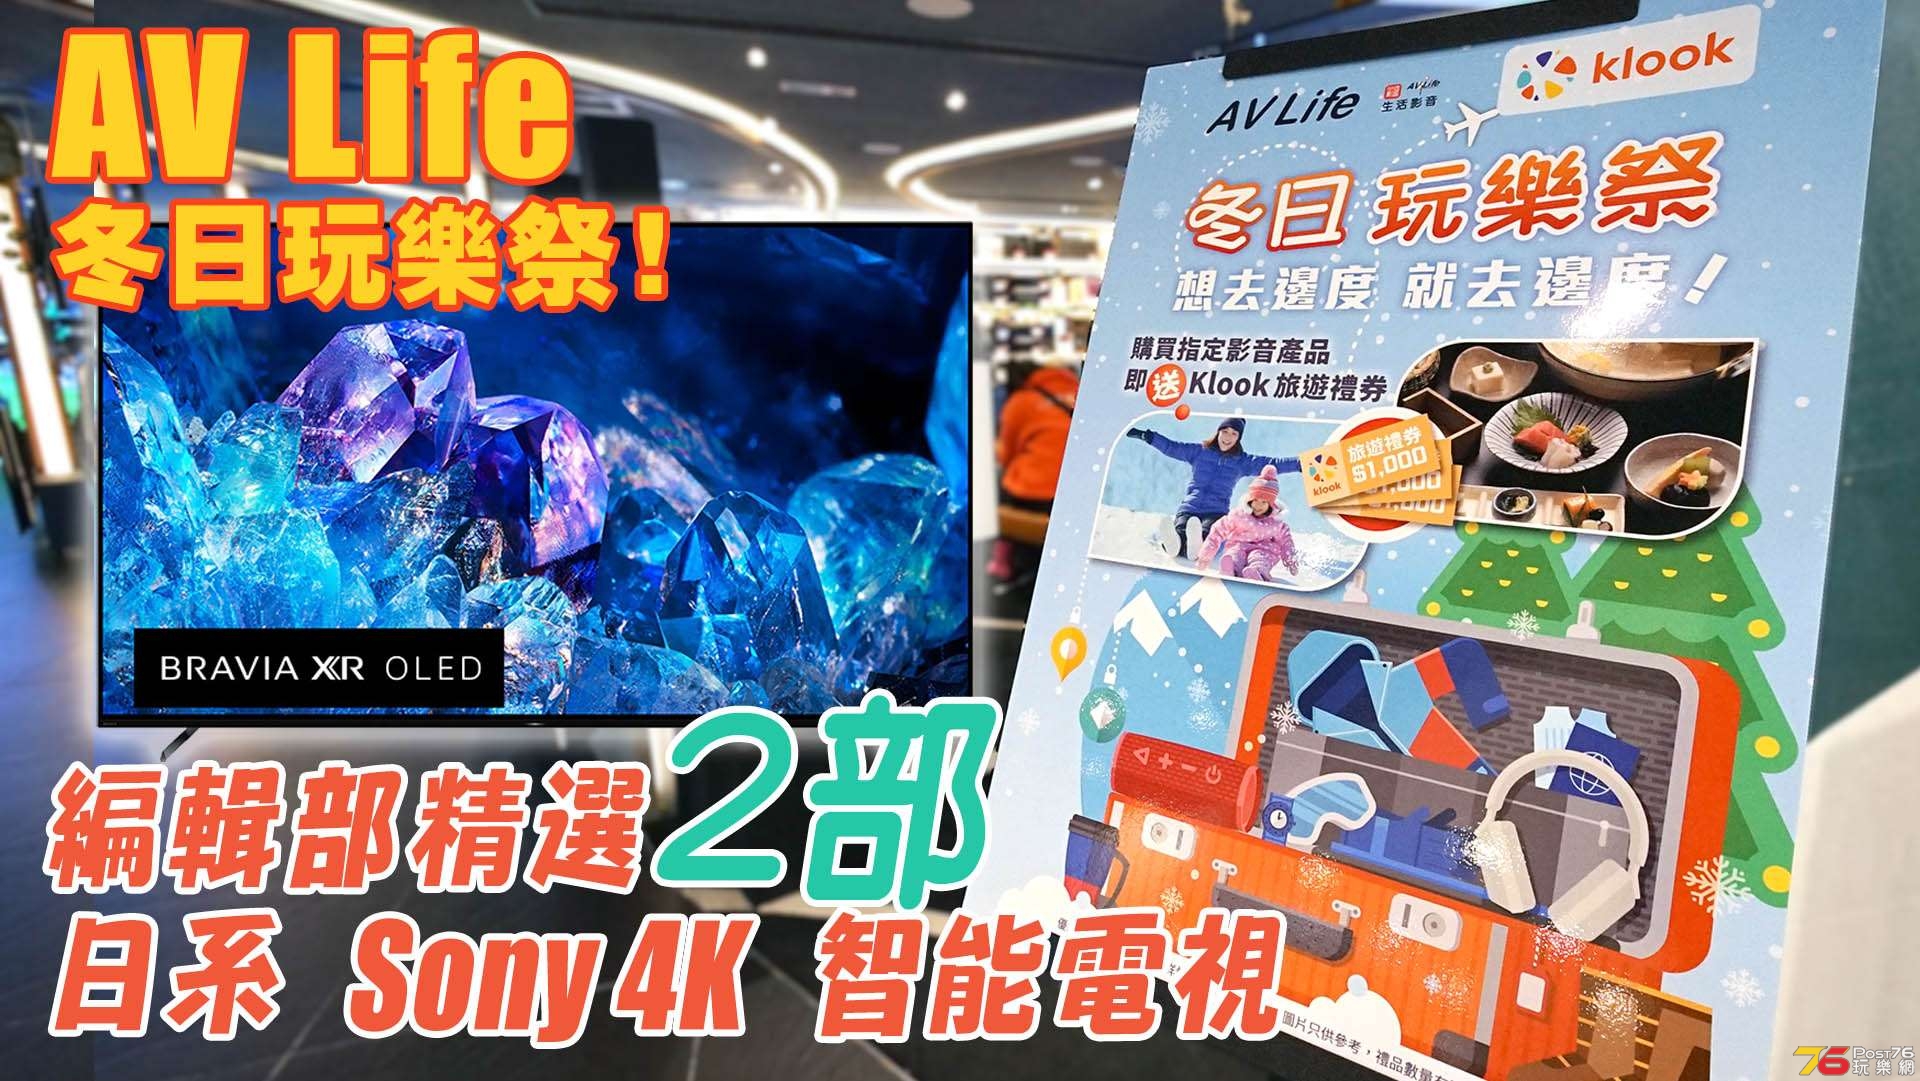 AVLife Sony TV Promotion forum copy.jpg